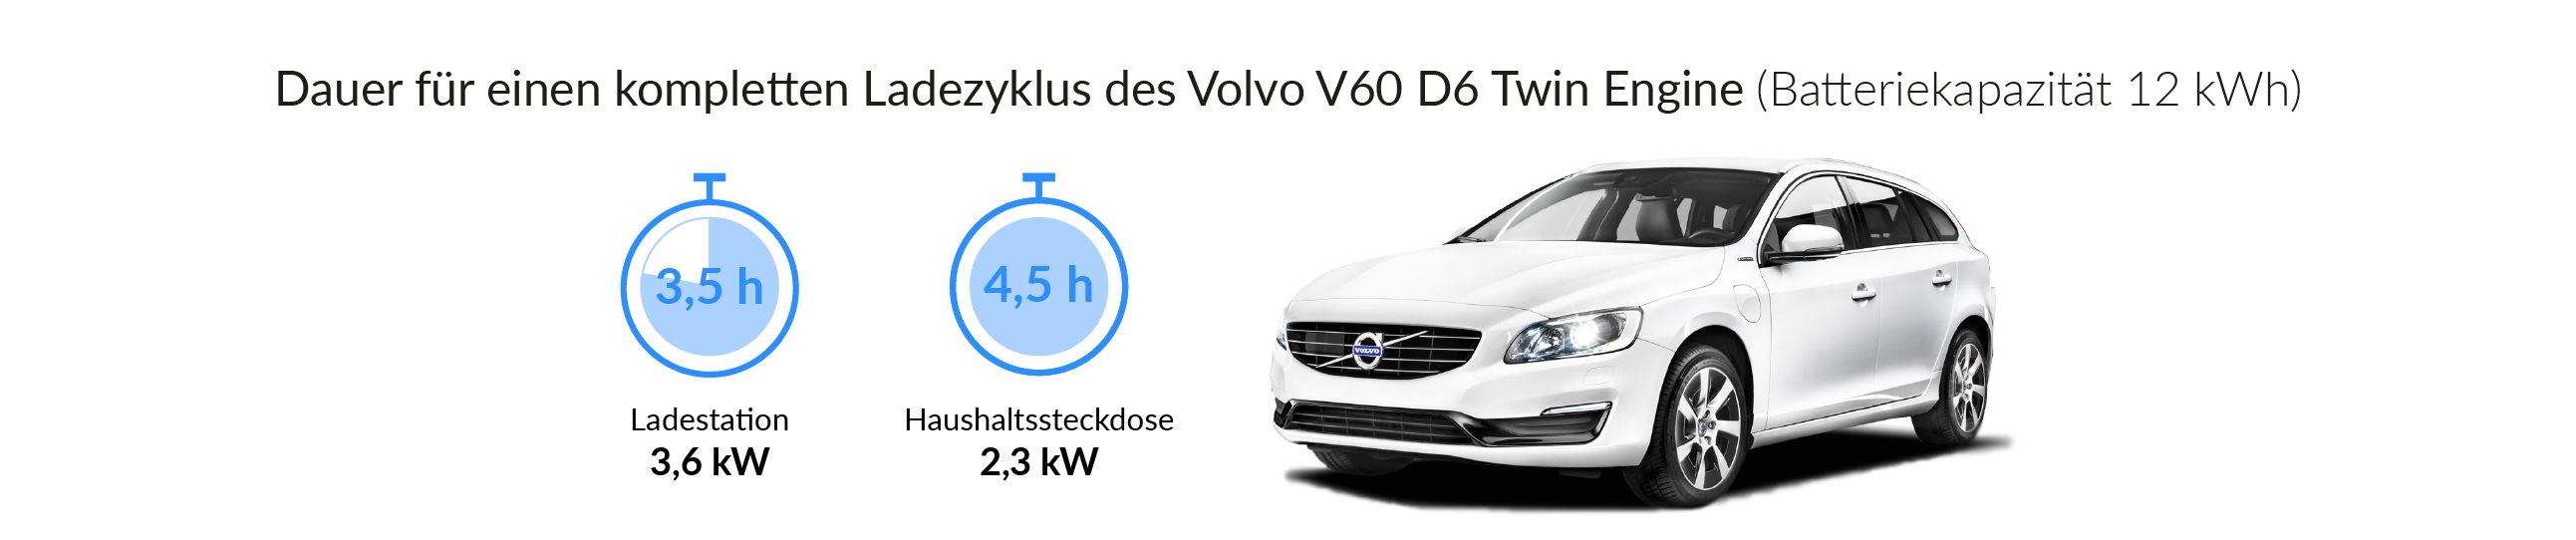 Ladezeiten des Volvo V60 D6 Twin Engine